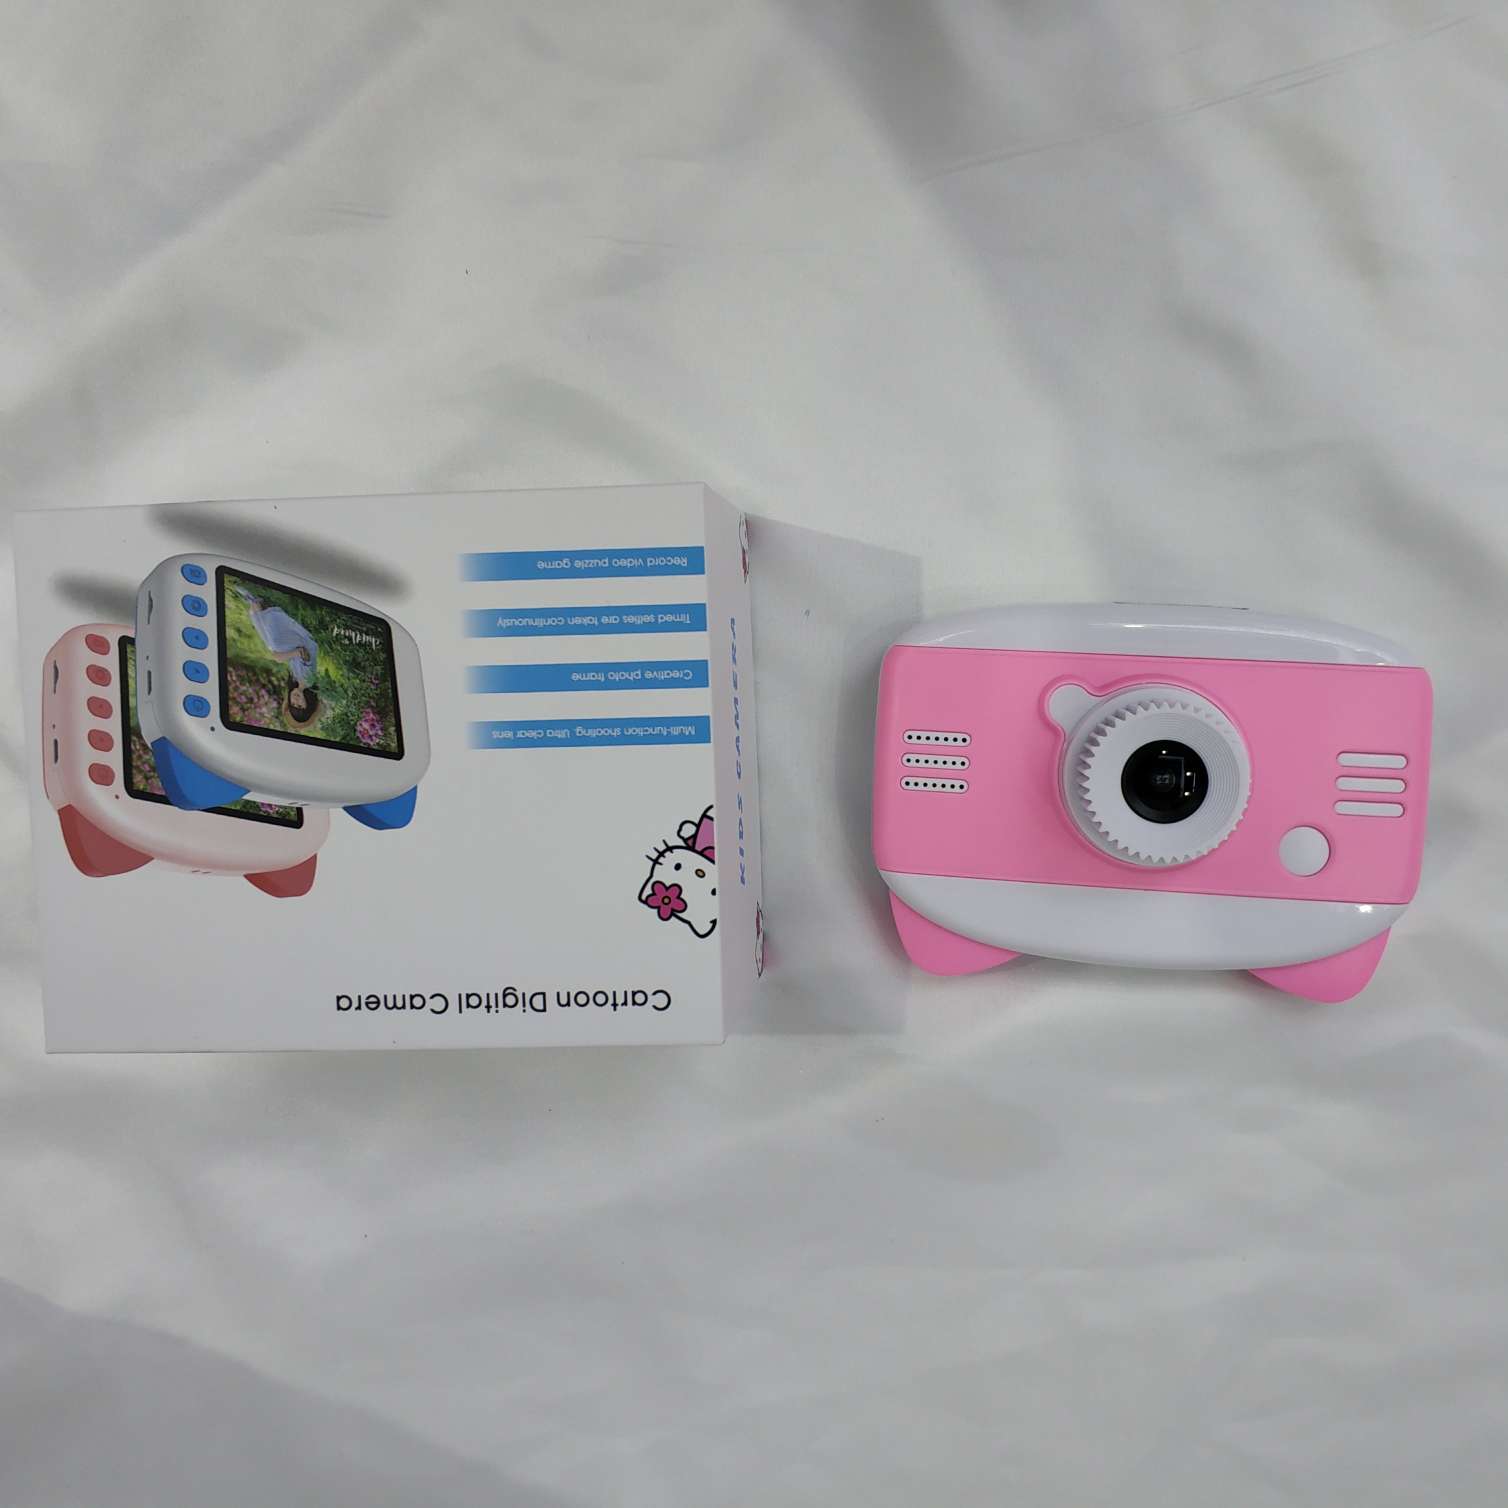 易创—07儿童数码相机小兔子宝宝拍照玩具礼物产品图